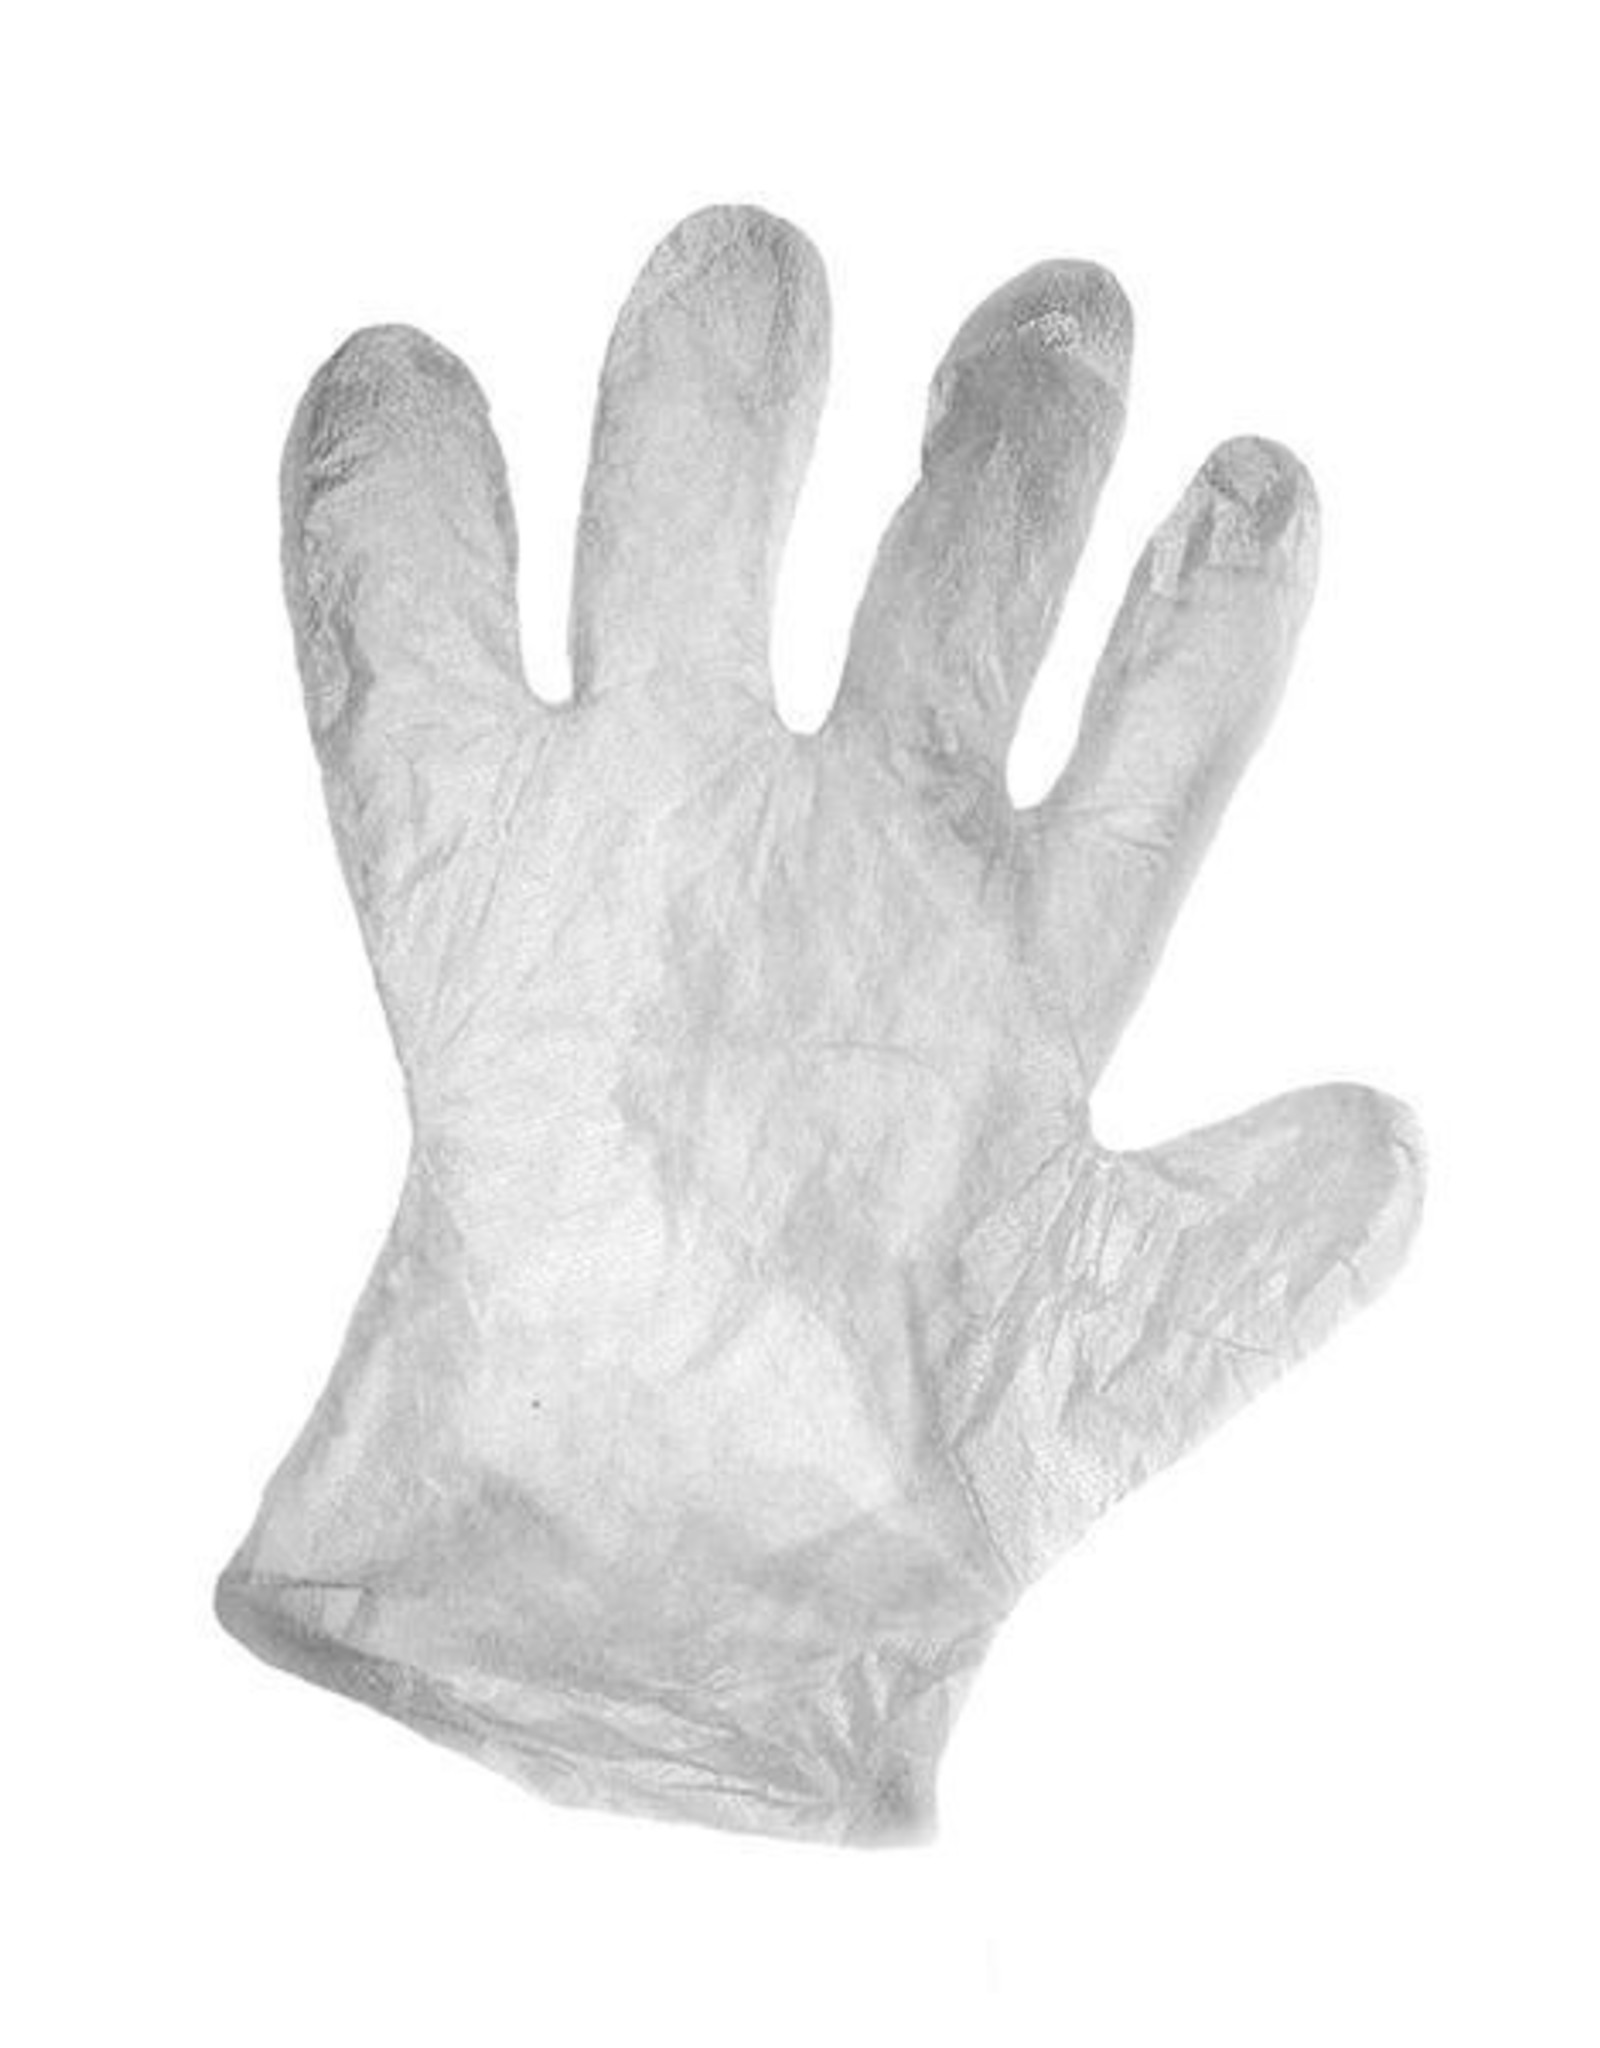 Merkloos Paraffine plastic handschoenen 50 stuks